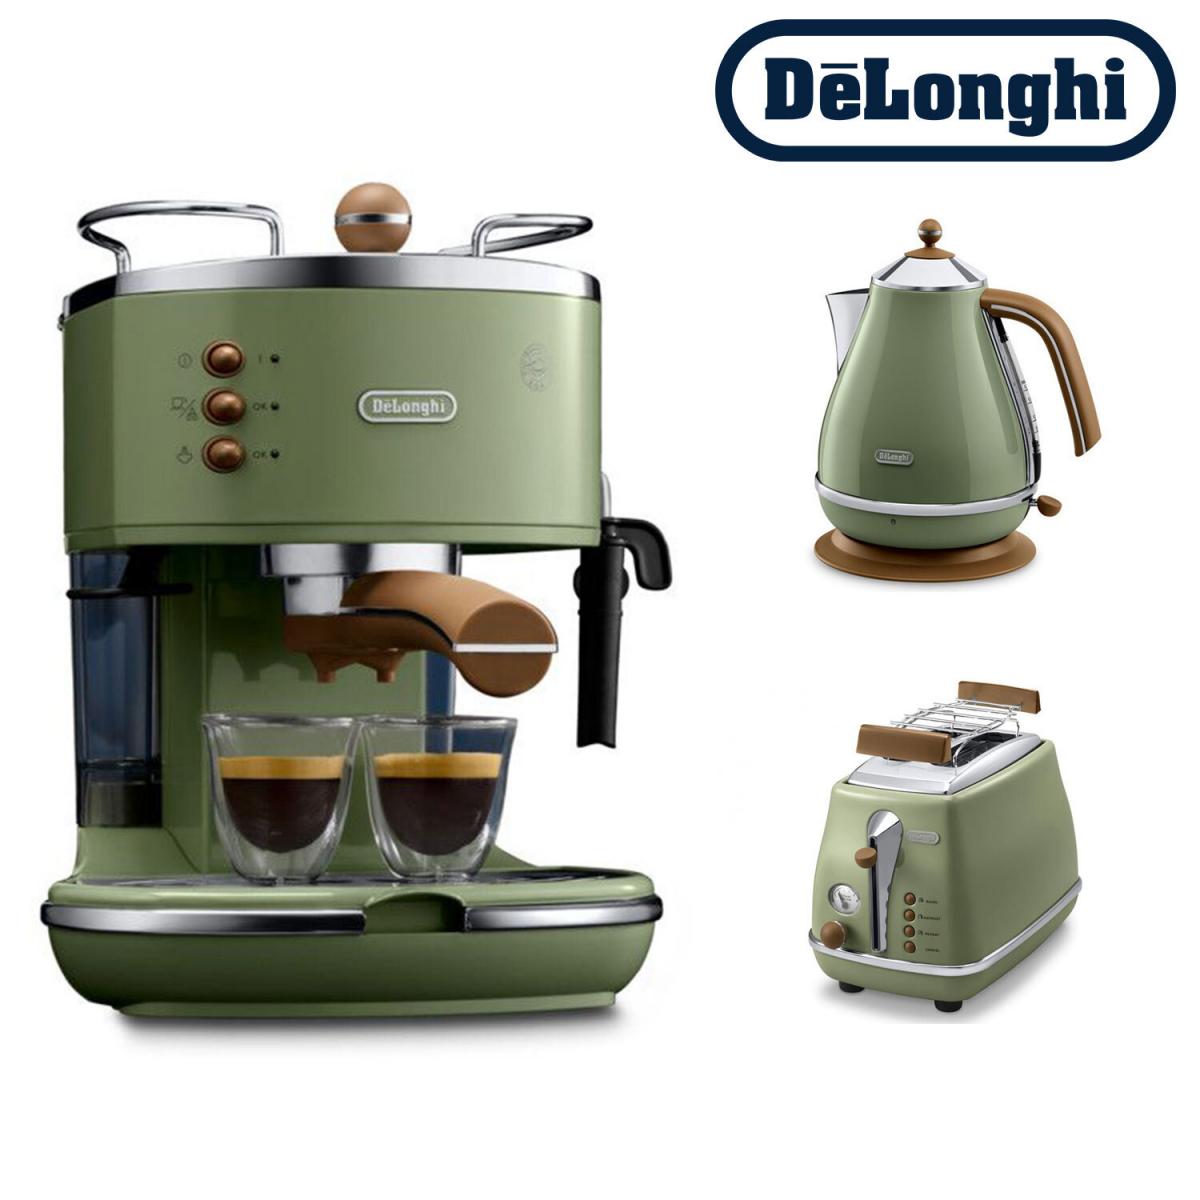 [優惠套裝] 意式早餐復古系列 (橄欖綠): 電水壺 + 多士爐 + 半自動咖啡機